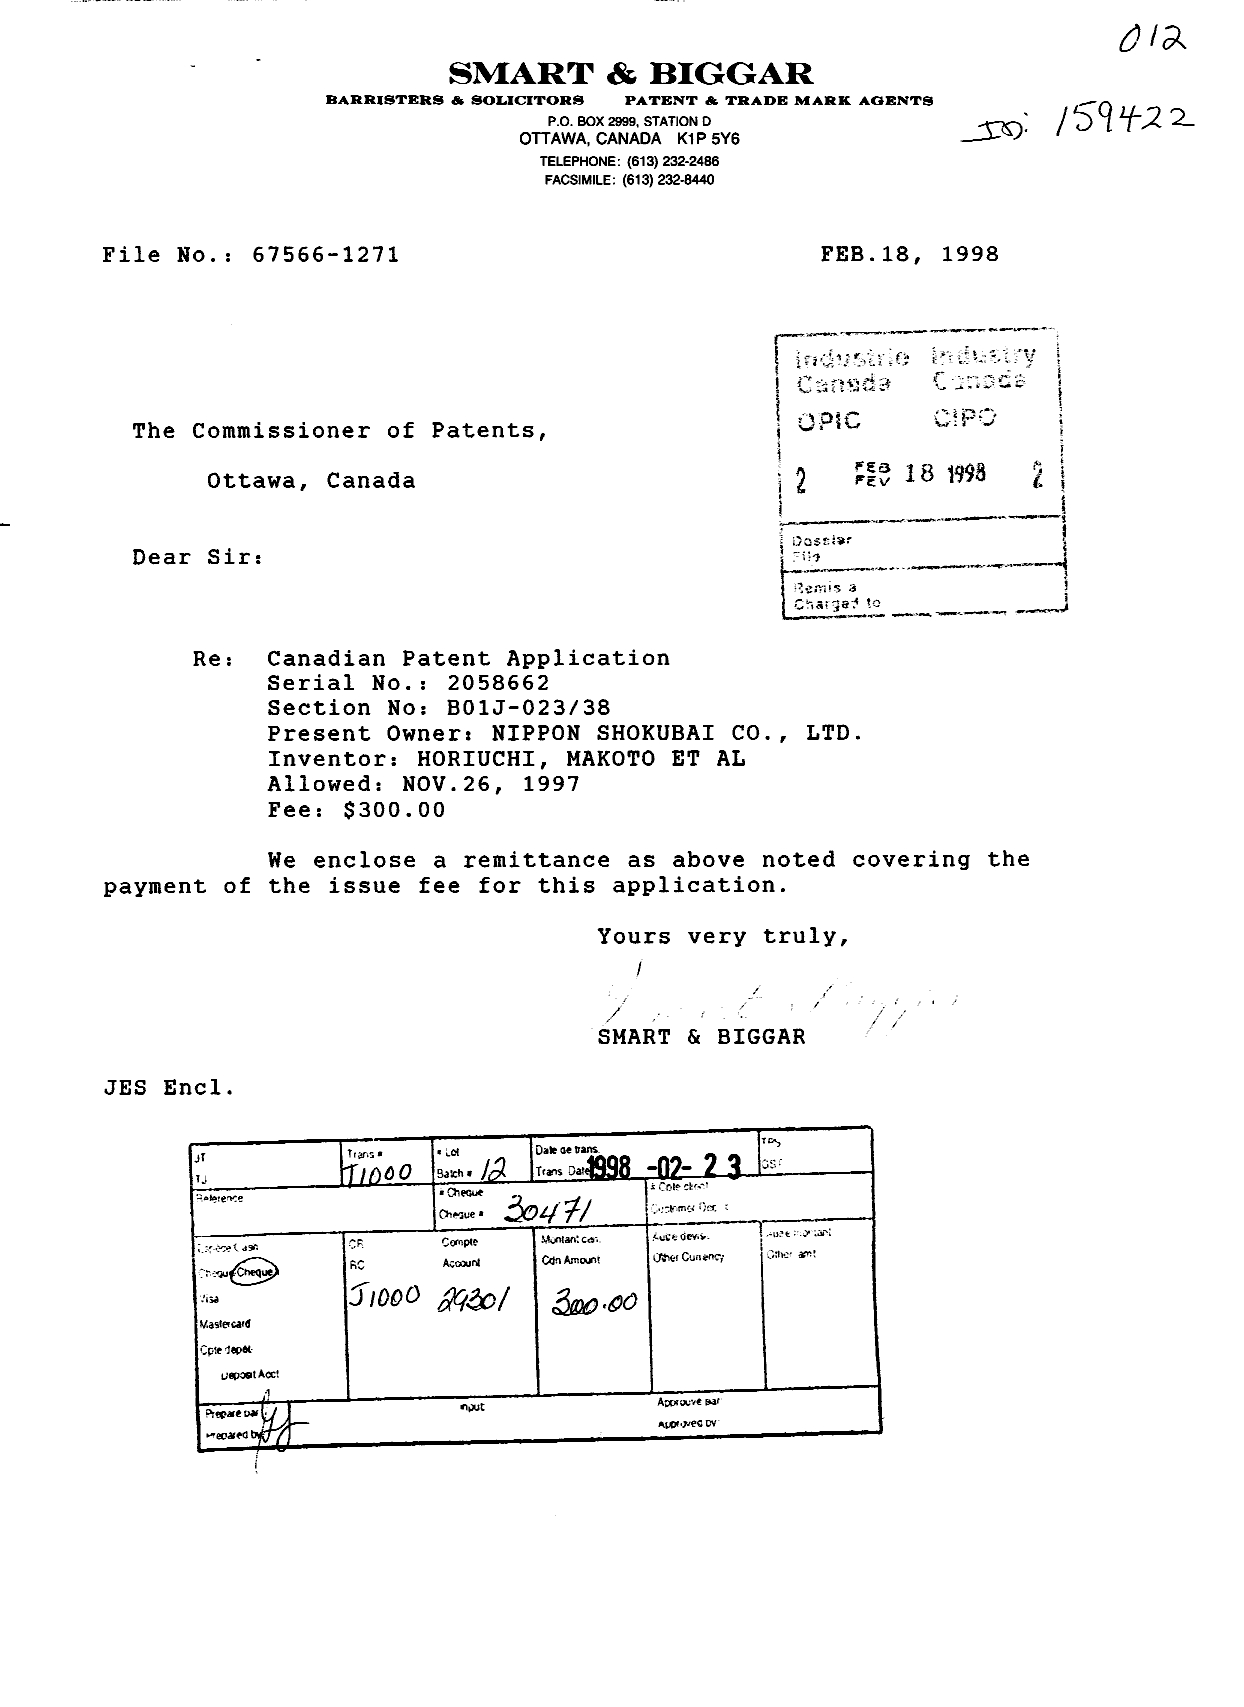 Document de brevet canadien 2058662. Correspondance 19980218. Image 1 de 1